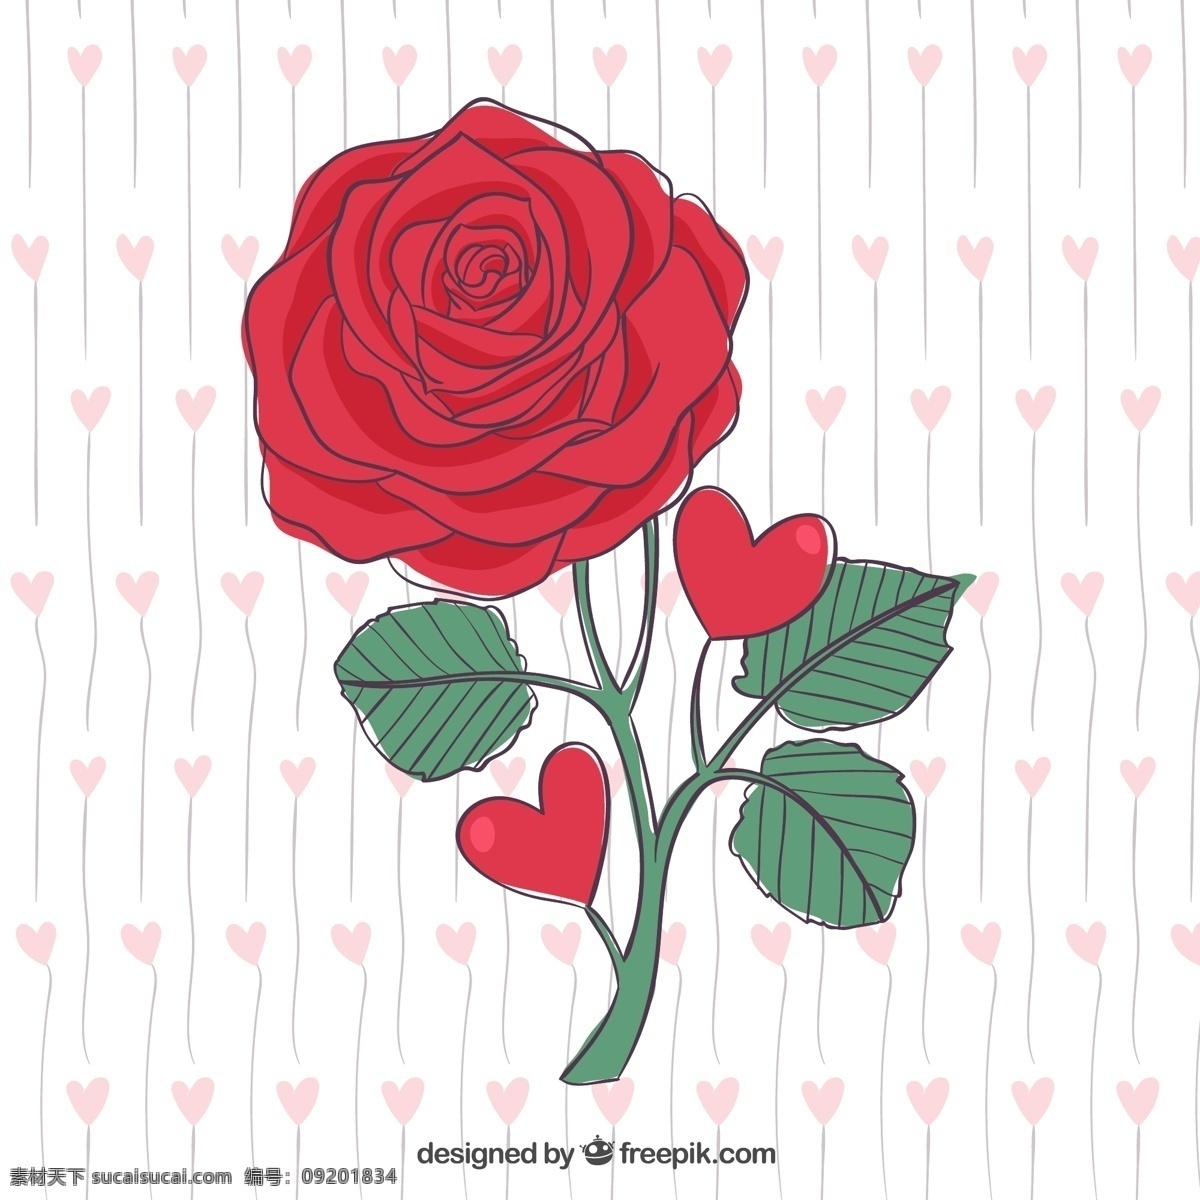 美丽 手绘 红玫瑰 花卉 自然 玫瑰 红色 情人节 目前 抽纱 花瓣 图标 高清 源文件